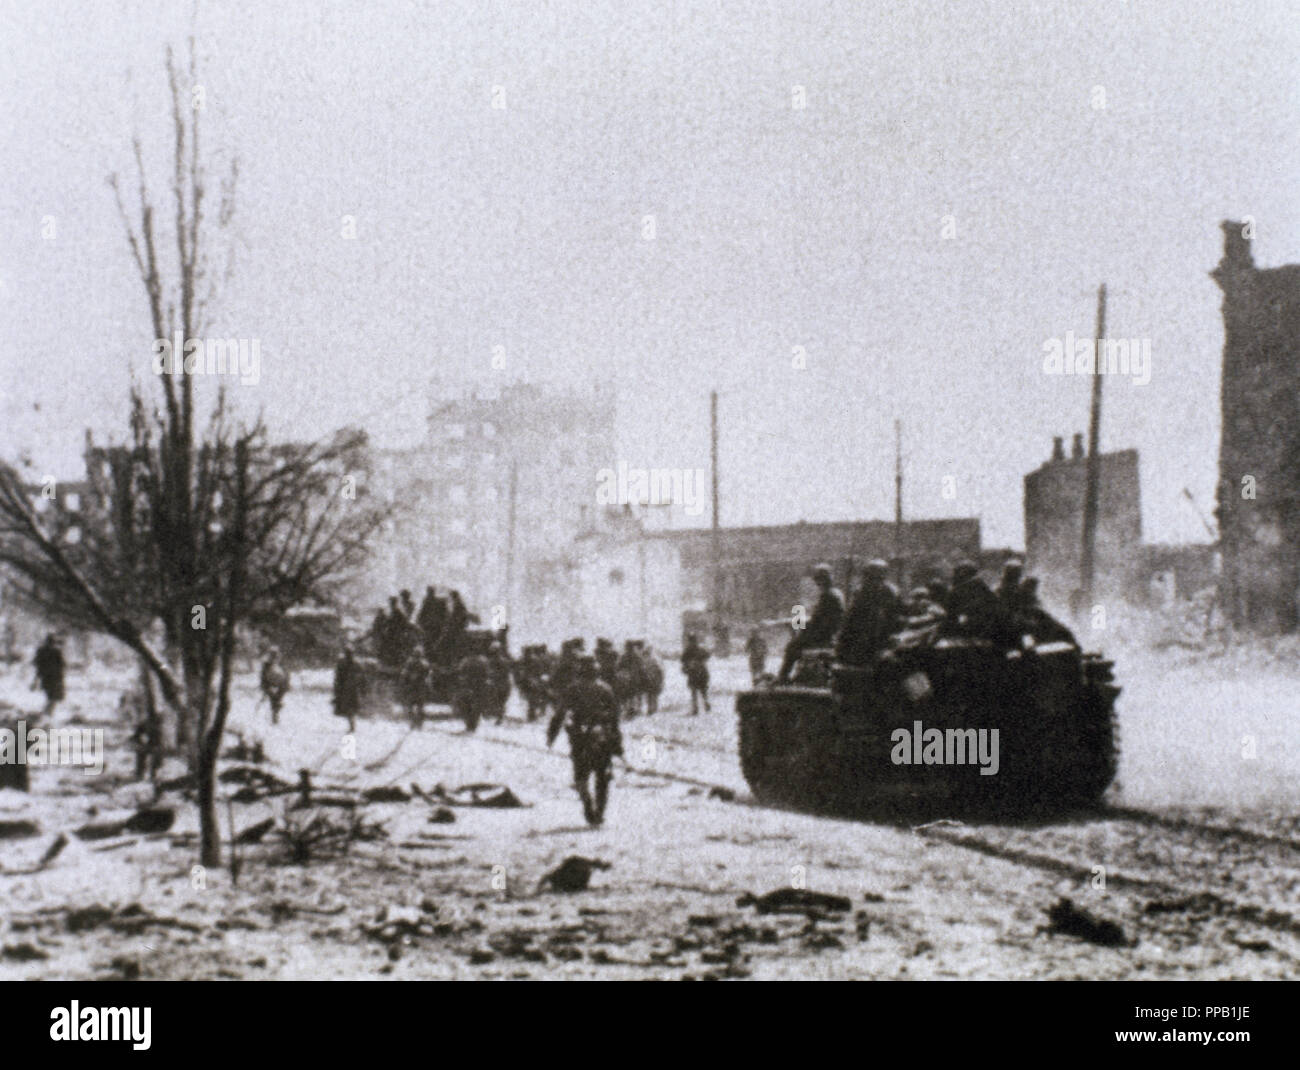 La SECONDE GUERRE MONDIALE (1939-1945). Bataille de Stalingrad. Entre l'allemand et l'armée soviétique (août 1942 - Février 1943). L'artillerie dans la ville de Stalingrad. Urss. Banque D'Images